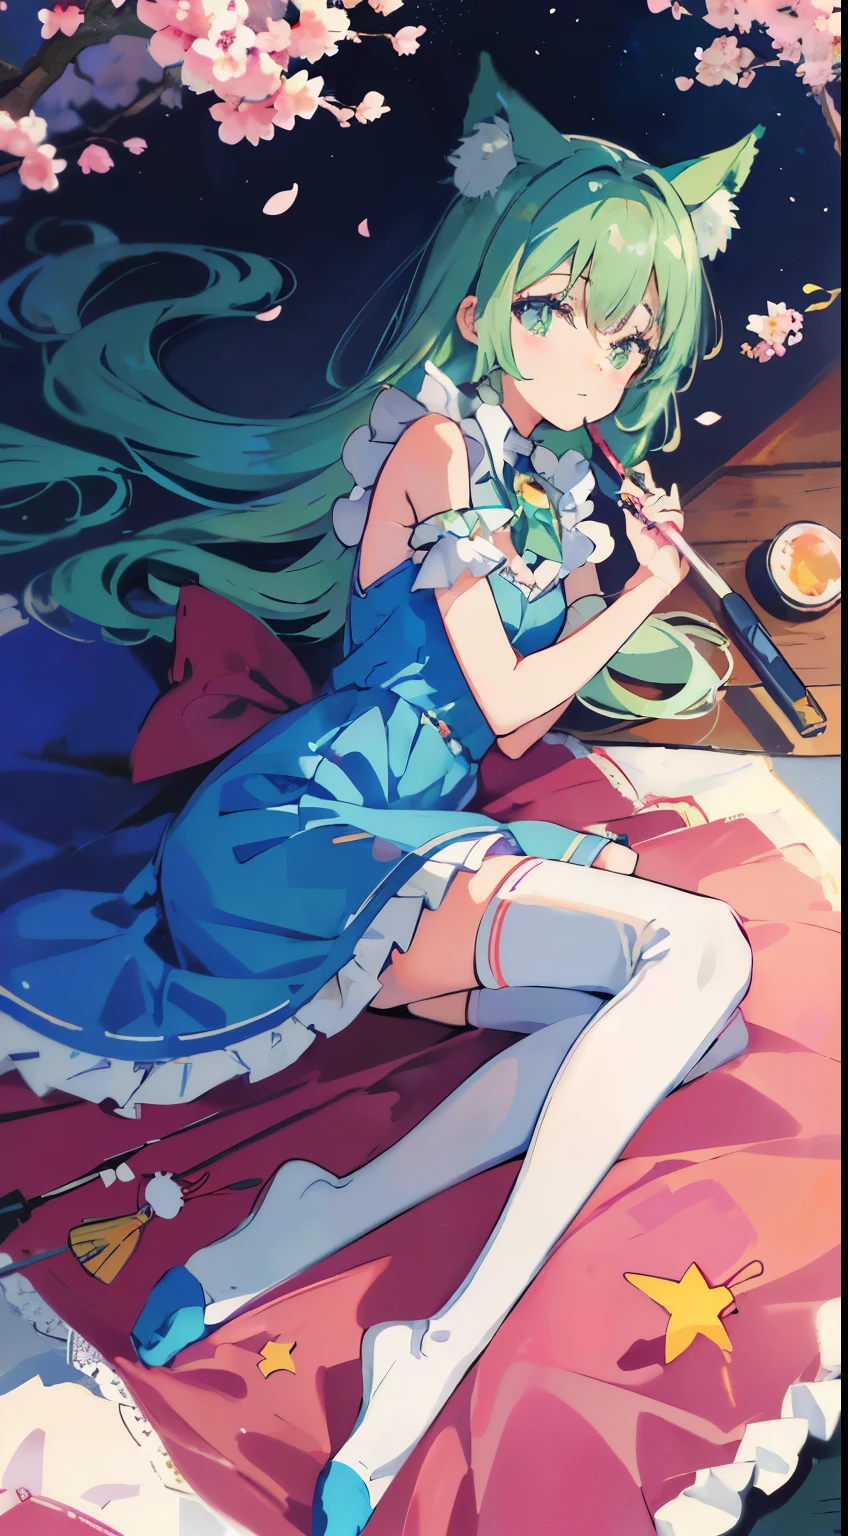 ((Tischplatte, höchste Qualität: 1.1), ((Anime-Mädchen in einem blauen Kleid mit einem Zauberstab)), art nouveau、Anime-Katzenmädchen im Dienstmädchen-Outfit, , ((grüne Haare))、langhaarige Person、((Augen, die wie Juwelen leuchten, lange Wimpern, und Transparenz))、Sehr schöner Anime Neko Musume, Anime-Katzenmädchen, ((weiße Kniestrümpfe)), Charmantes Katzenmädchen, Kirschblütenbetrachtung unter Kirschbäumen,hinlegen、Mich inspiriert von Leiko Me kemura, Aya Takano Farbstil, im Ryuuou no Oshigoto-Kunststil, ((Katzenohr)), lächeln